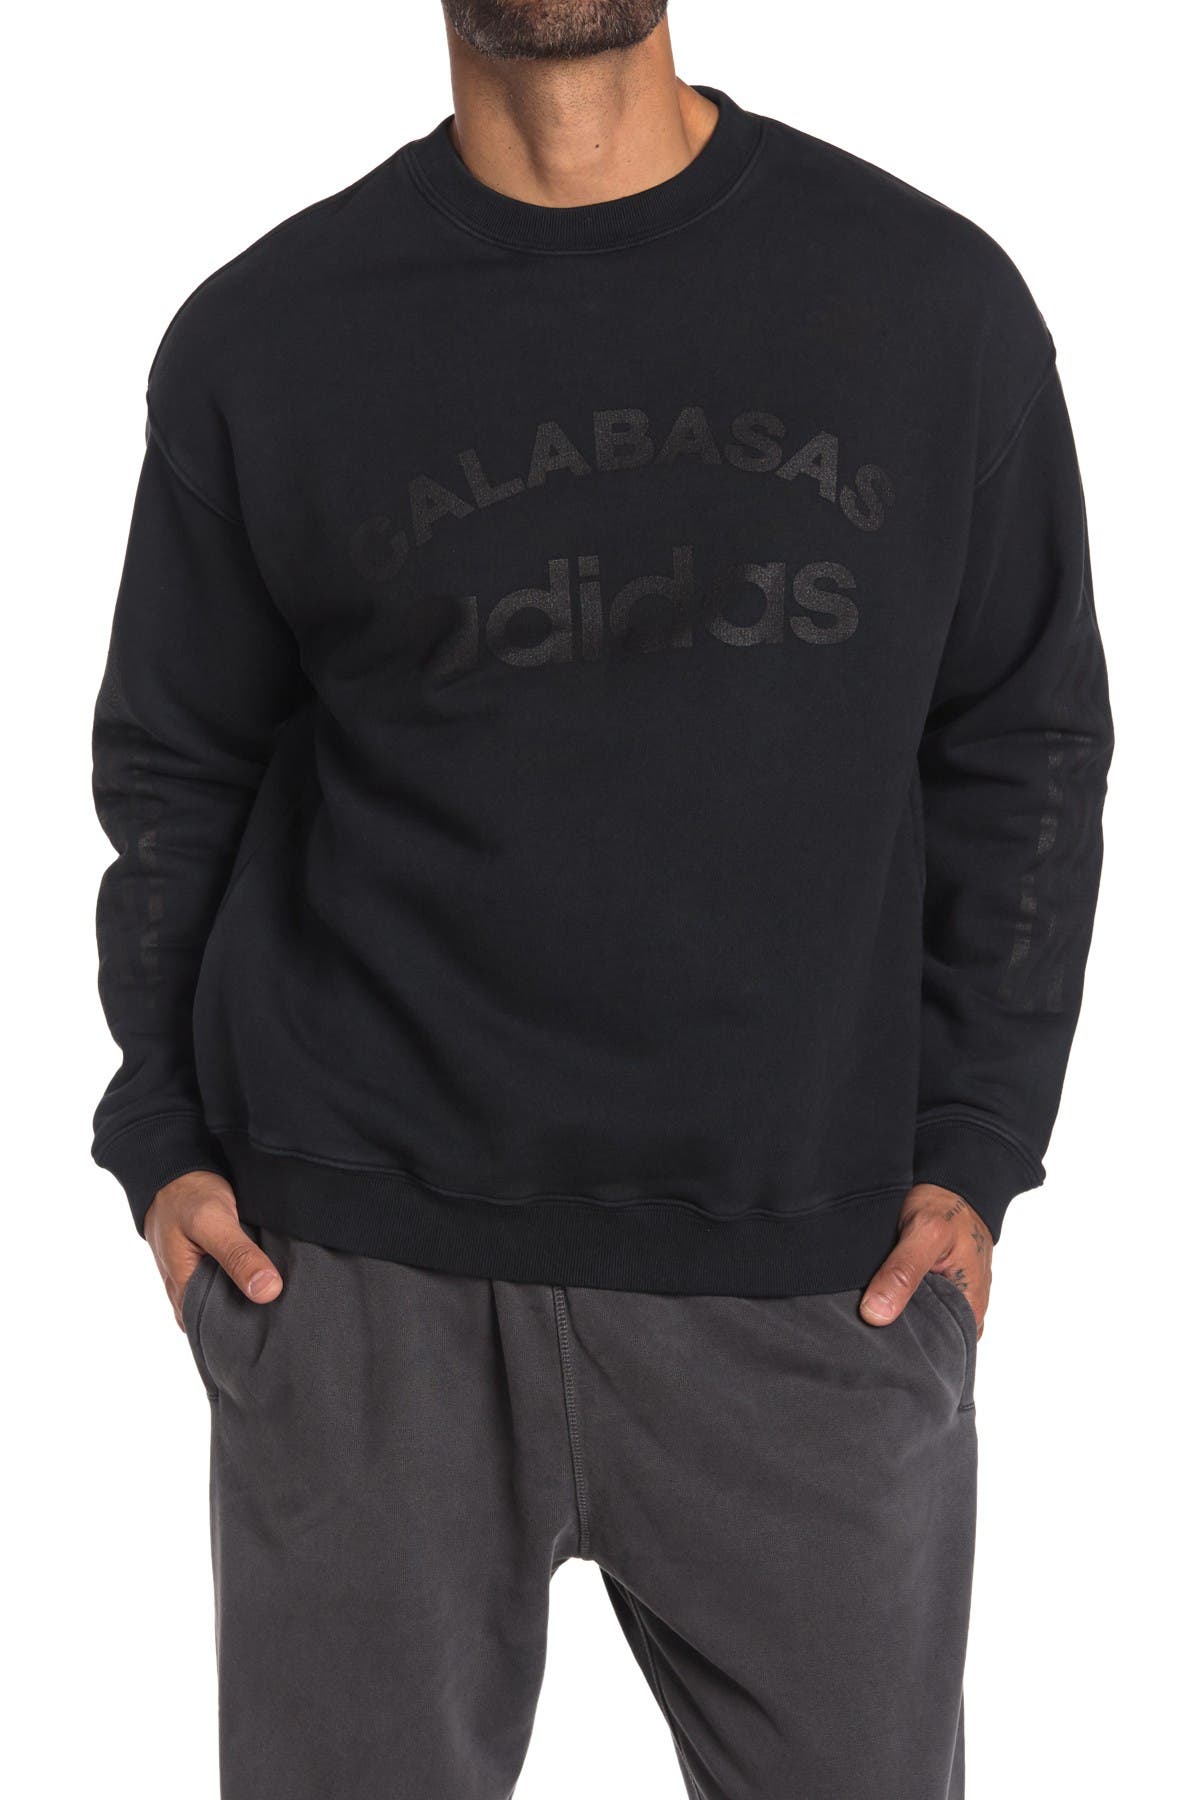 calabasas hoodie